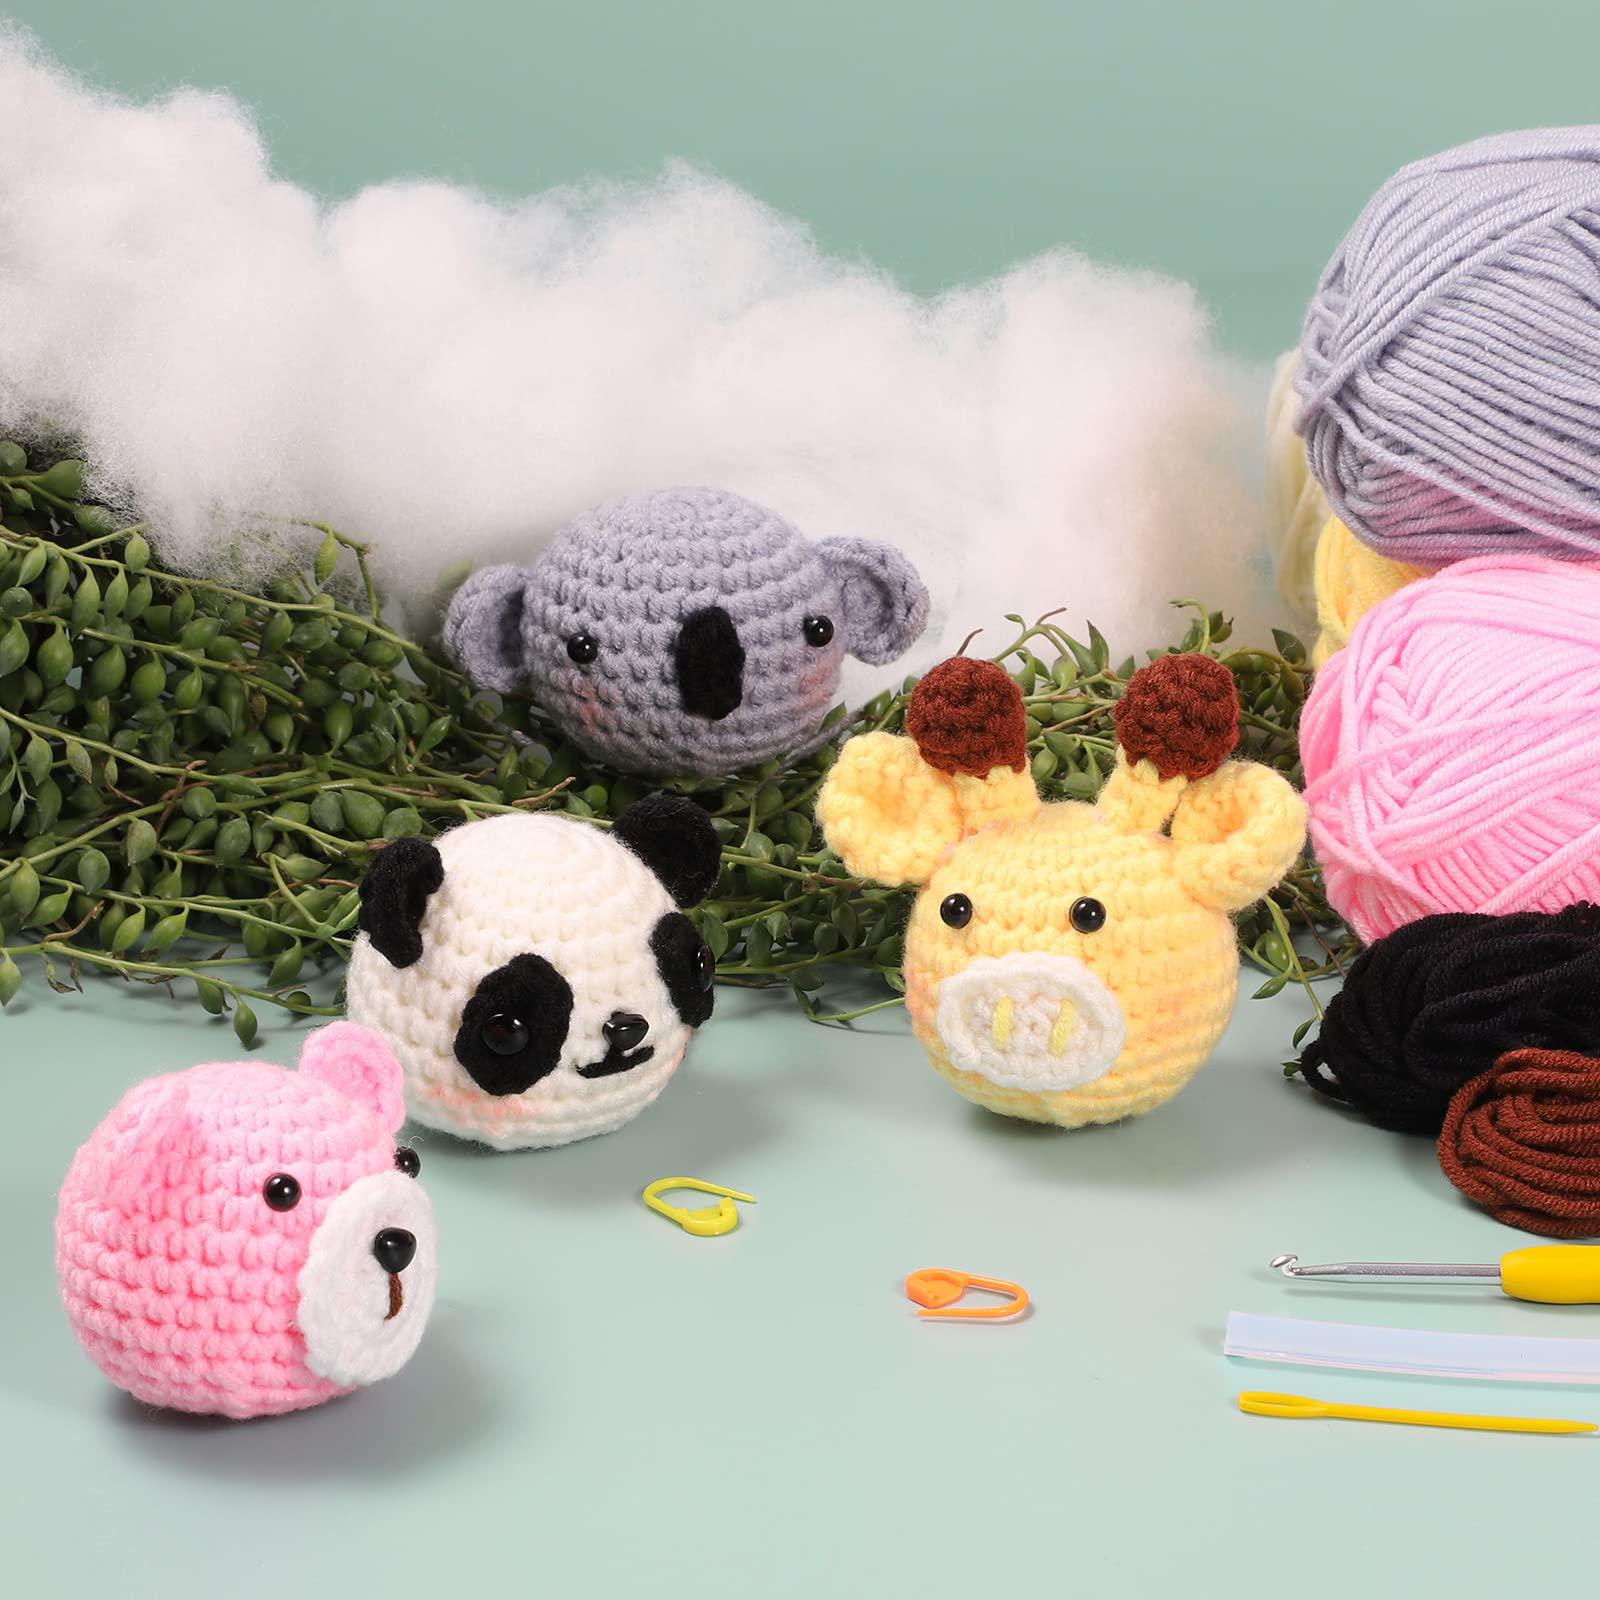 TianLian beginner crochet kits, crochet kits for kids and adults, 4pcs crochet  animal kit for starters